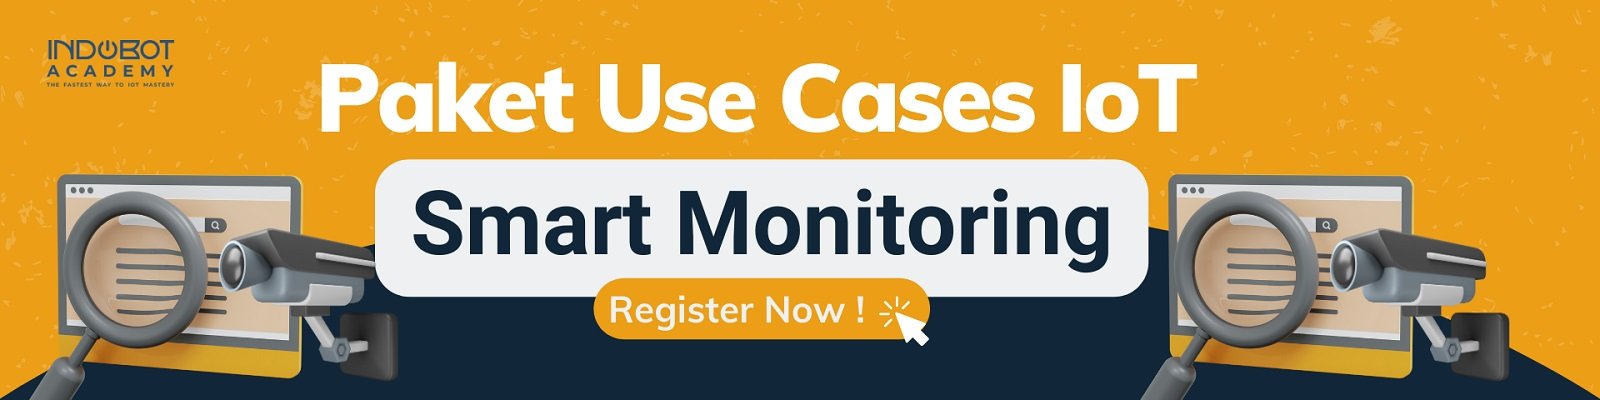 Paket Use Case Smart Monitoring